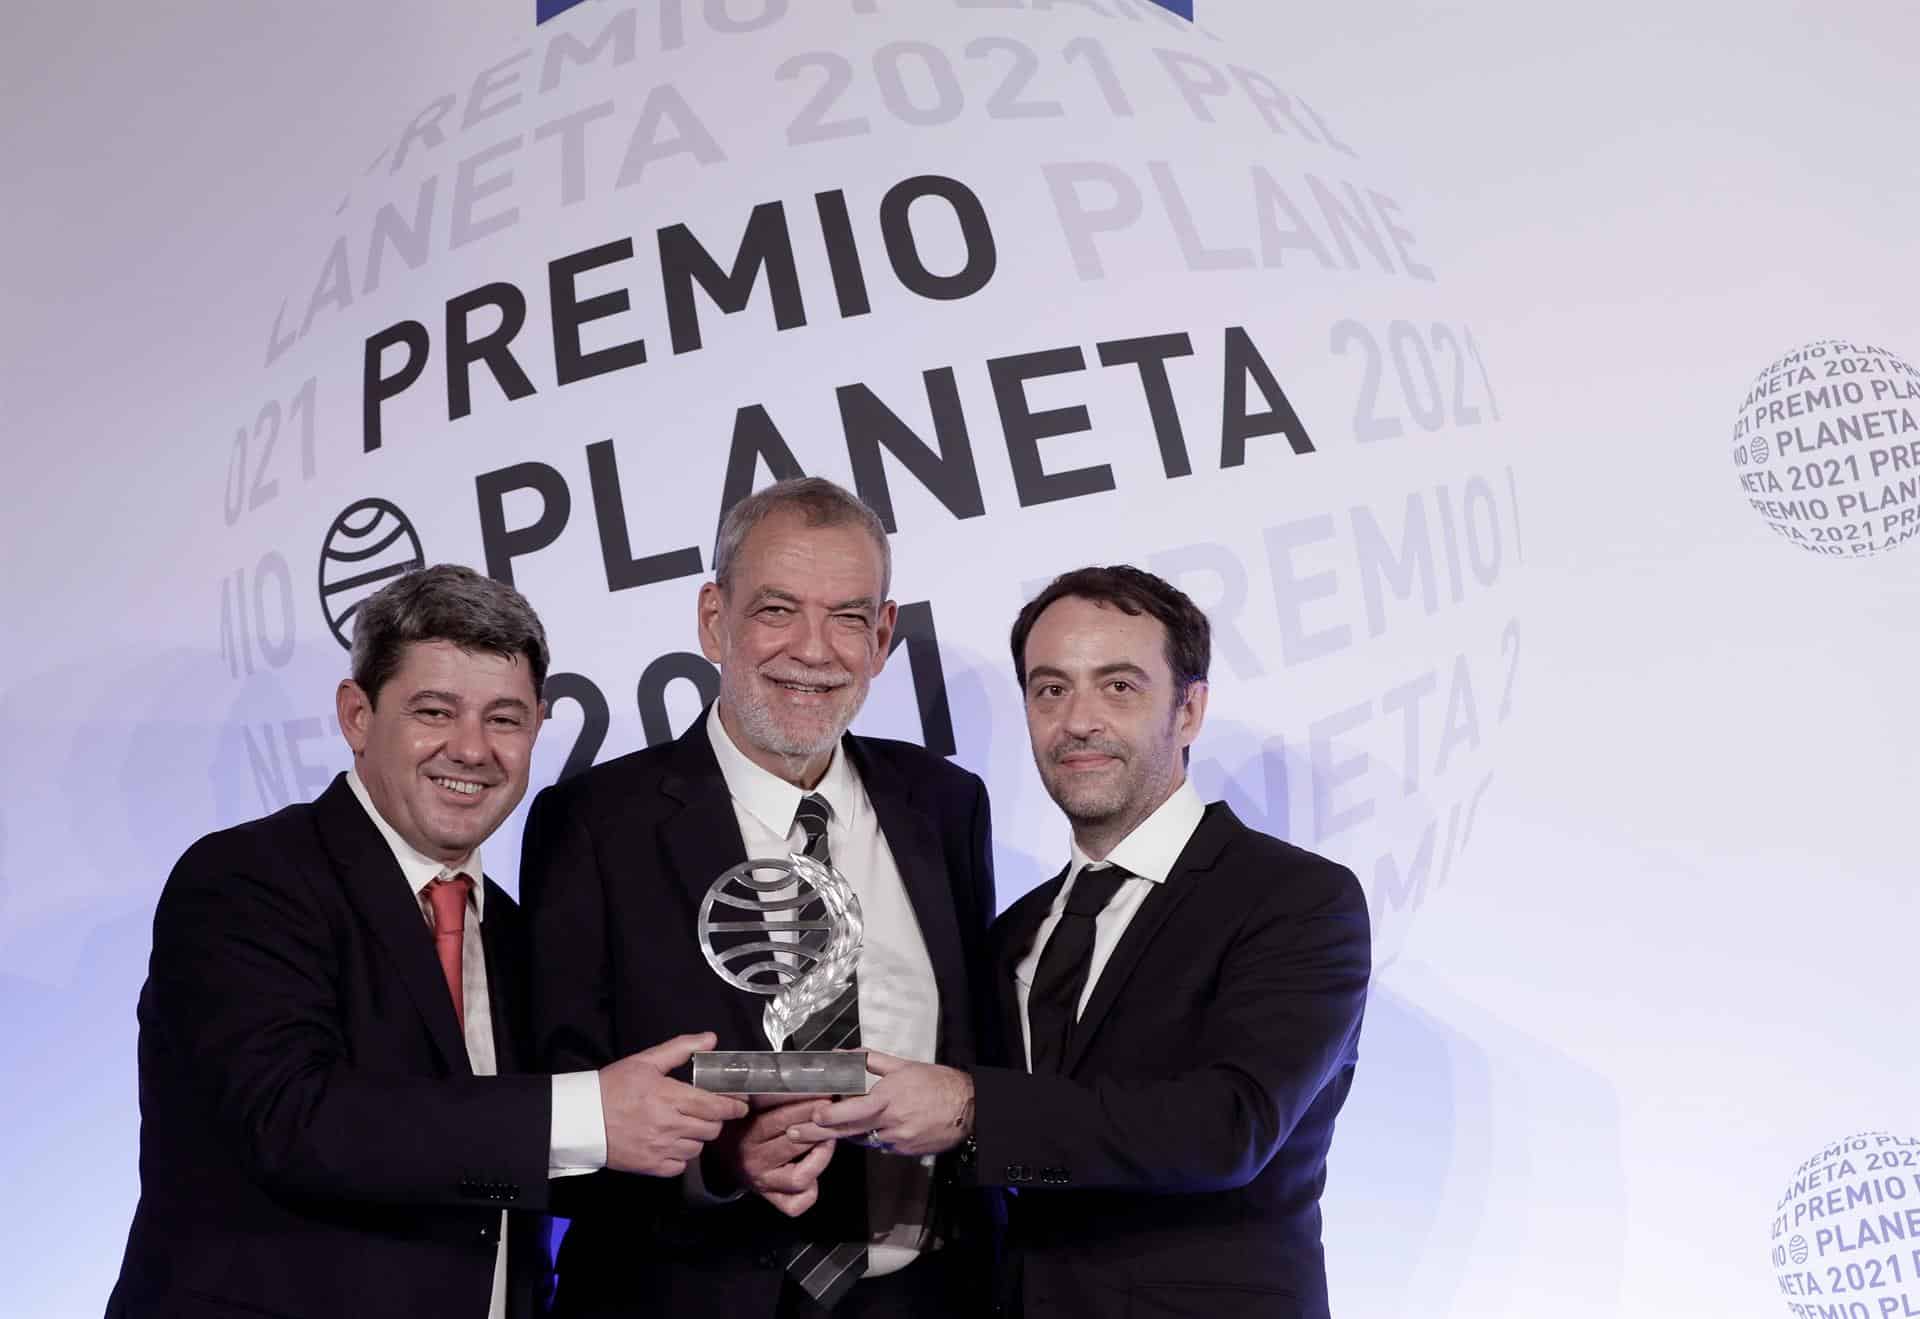 Antonio Mercero, Jorge Díaz y Agustín Martínez, los autores tras el pseudónimo de Carmen Mola premiado con el Planeta 2021.